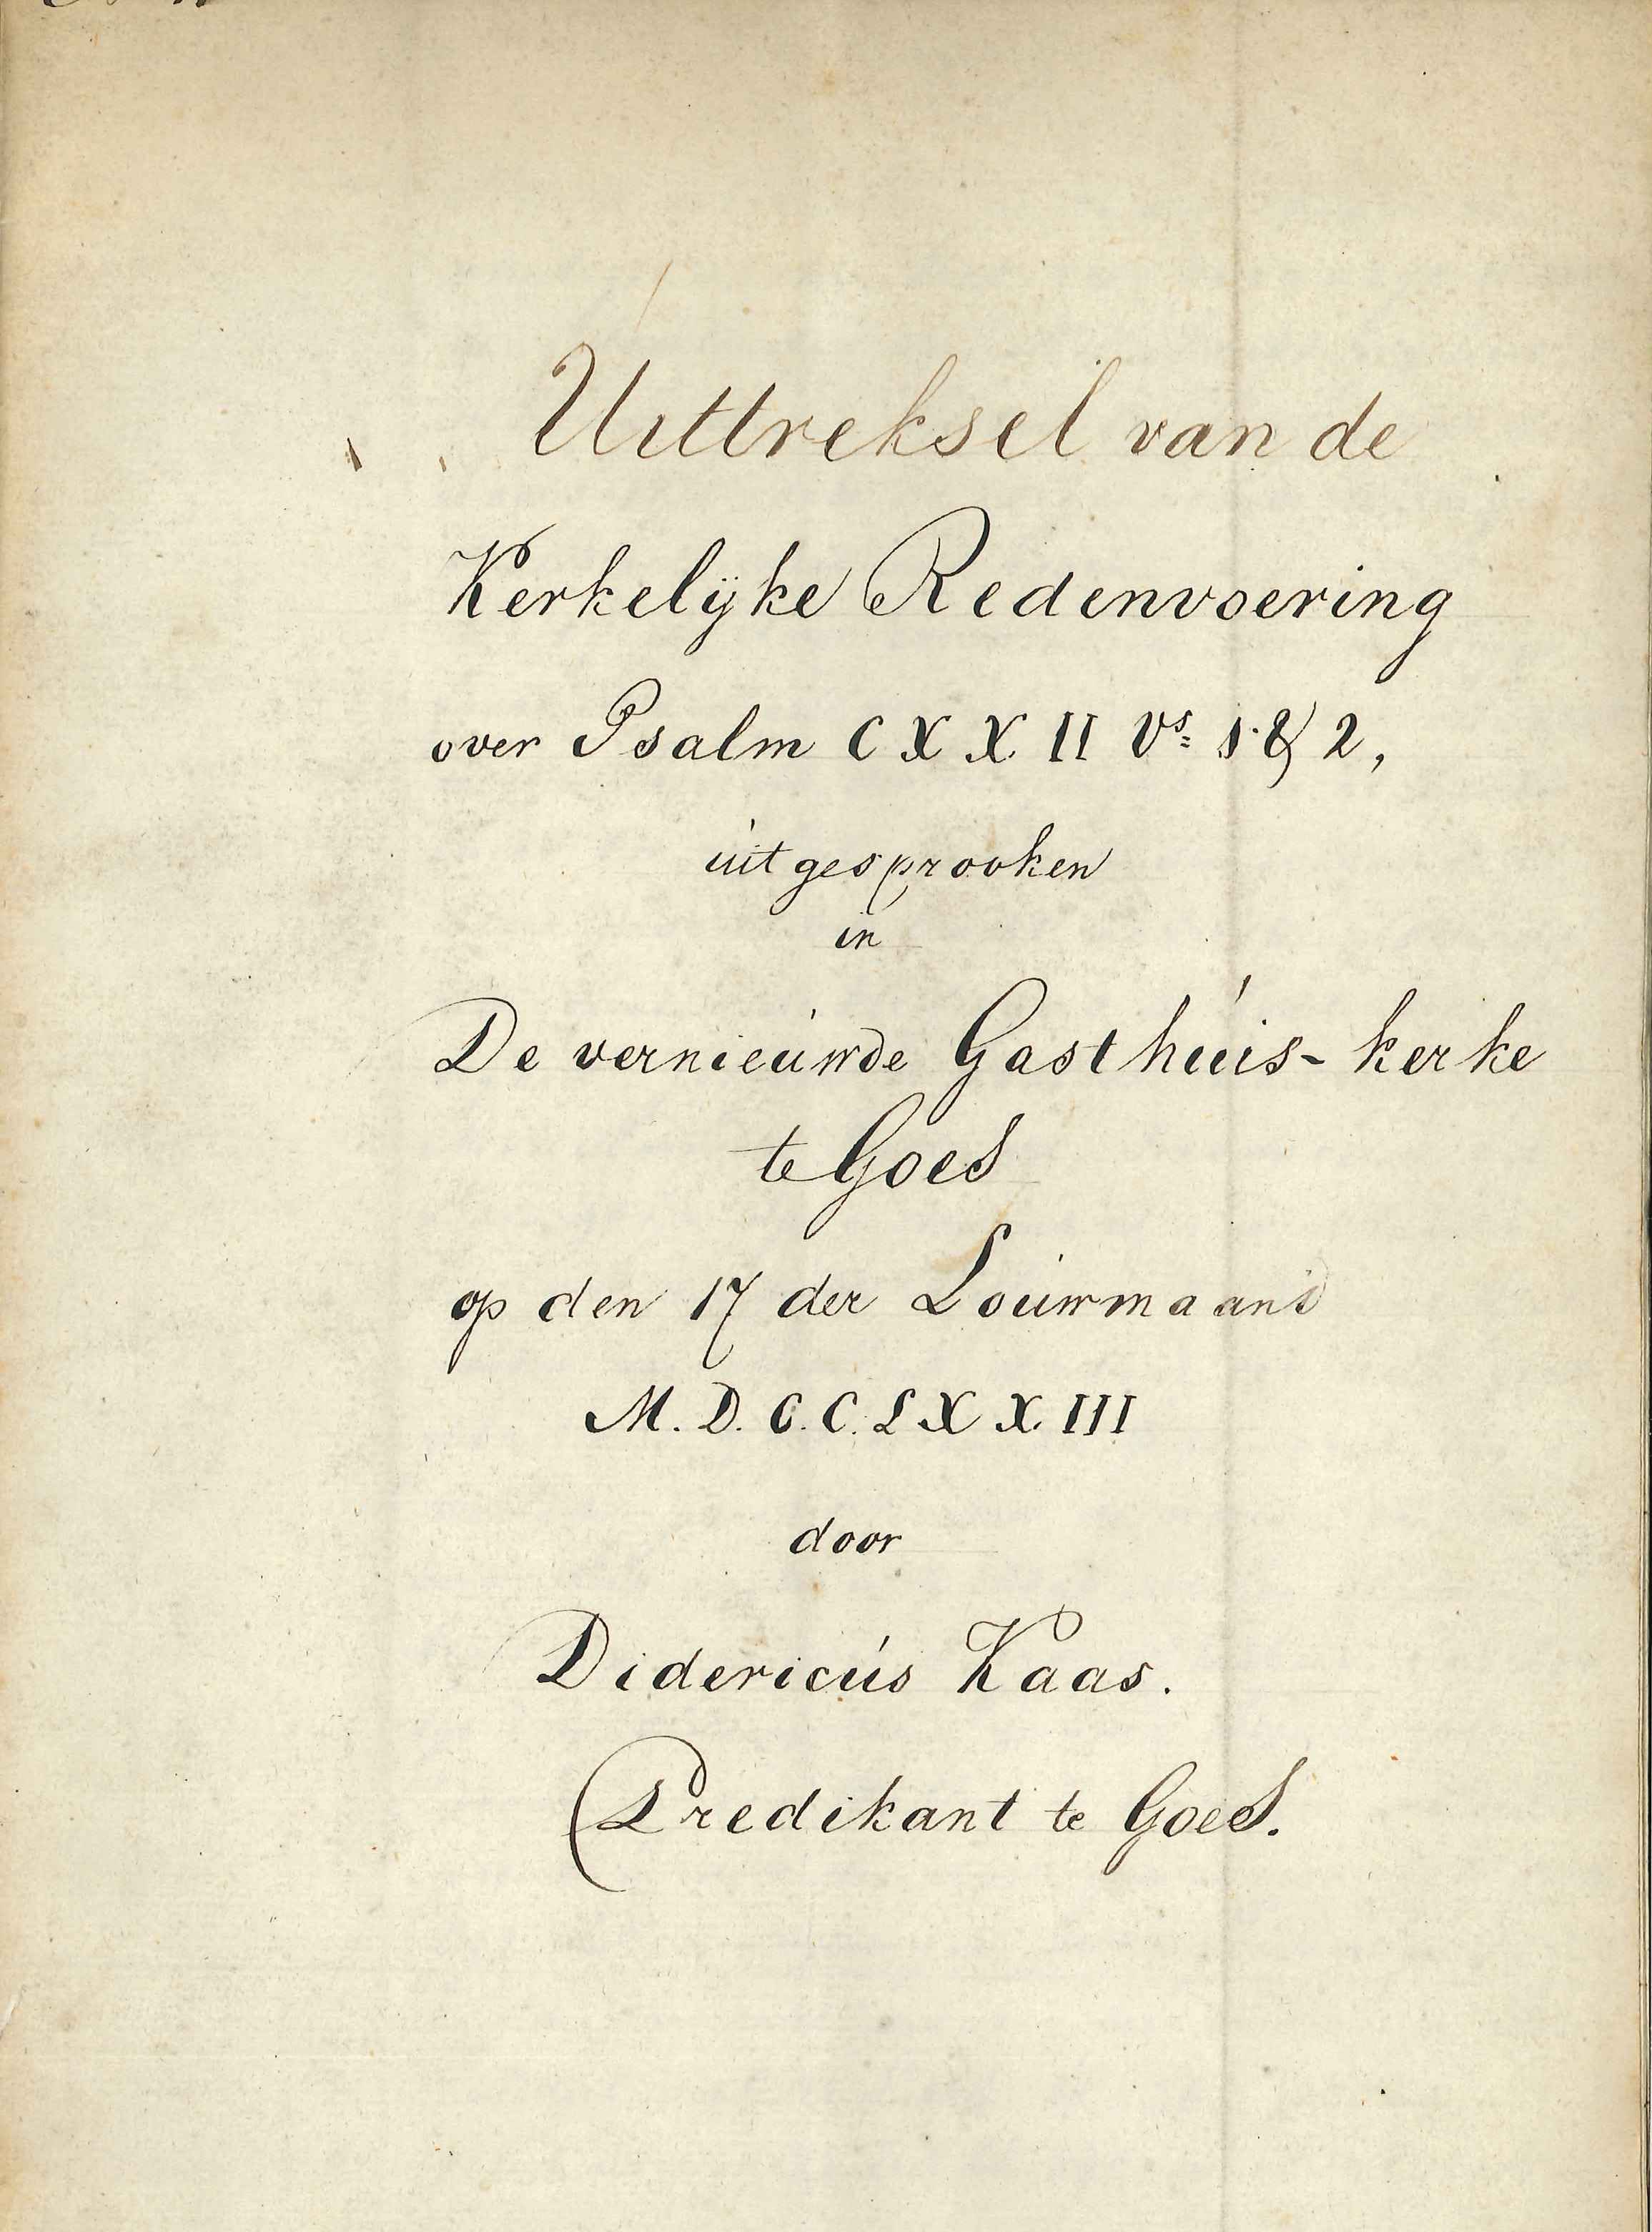 Titelblad van de toespraak van dominee D. Kaas bij de heropening van de Gasthuiskerk, 1773.